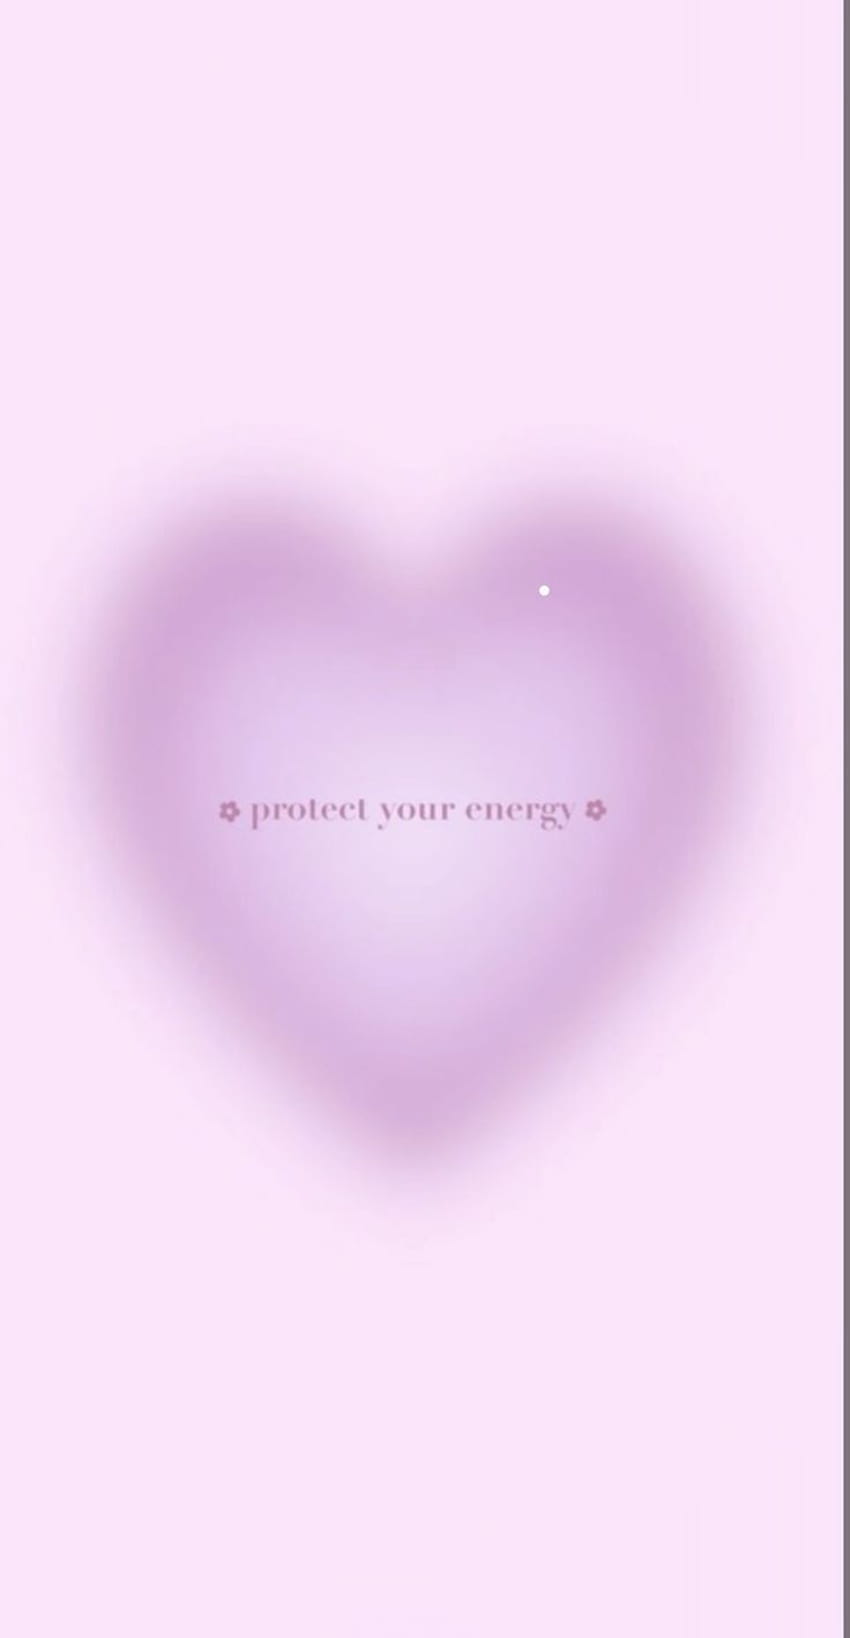 Aura-Kunstästhetik bunt mit Zitaten Herz degradieren Zitate schützen Ihre Energie, Aura-Ästhetik HD-Handy-Hintergrundbild